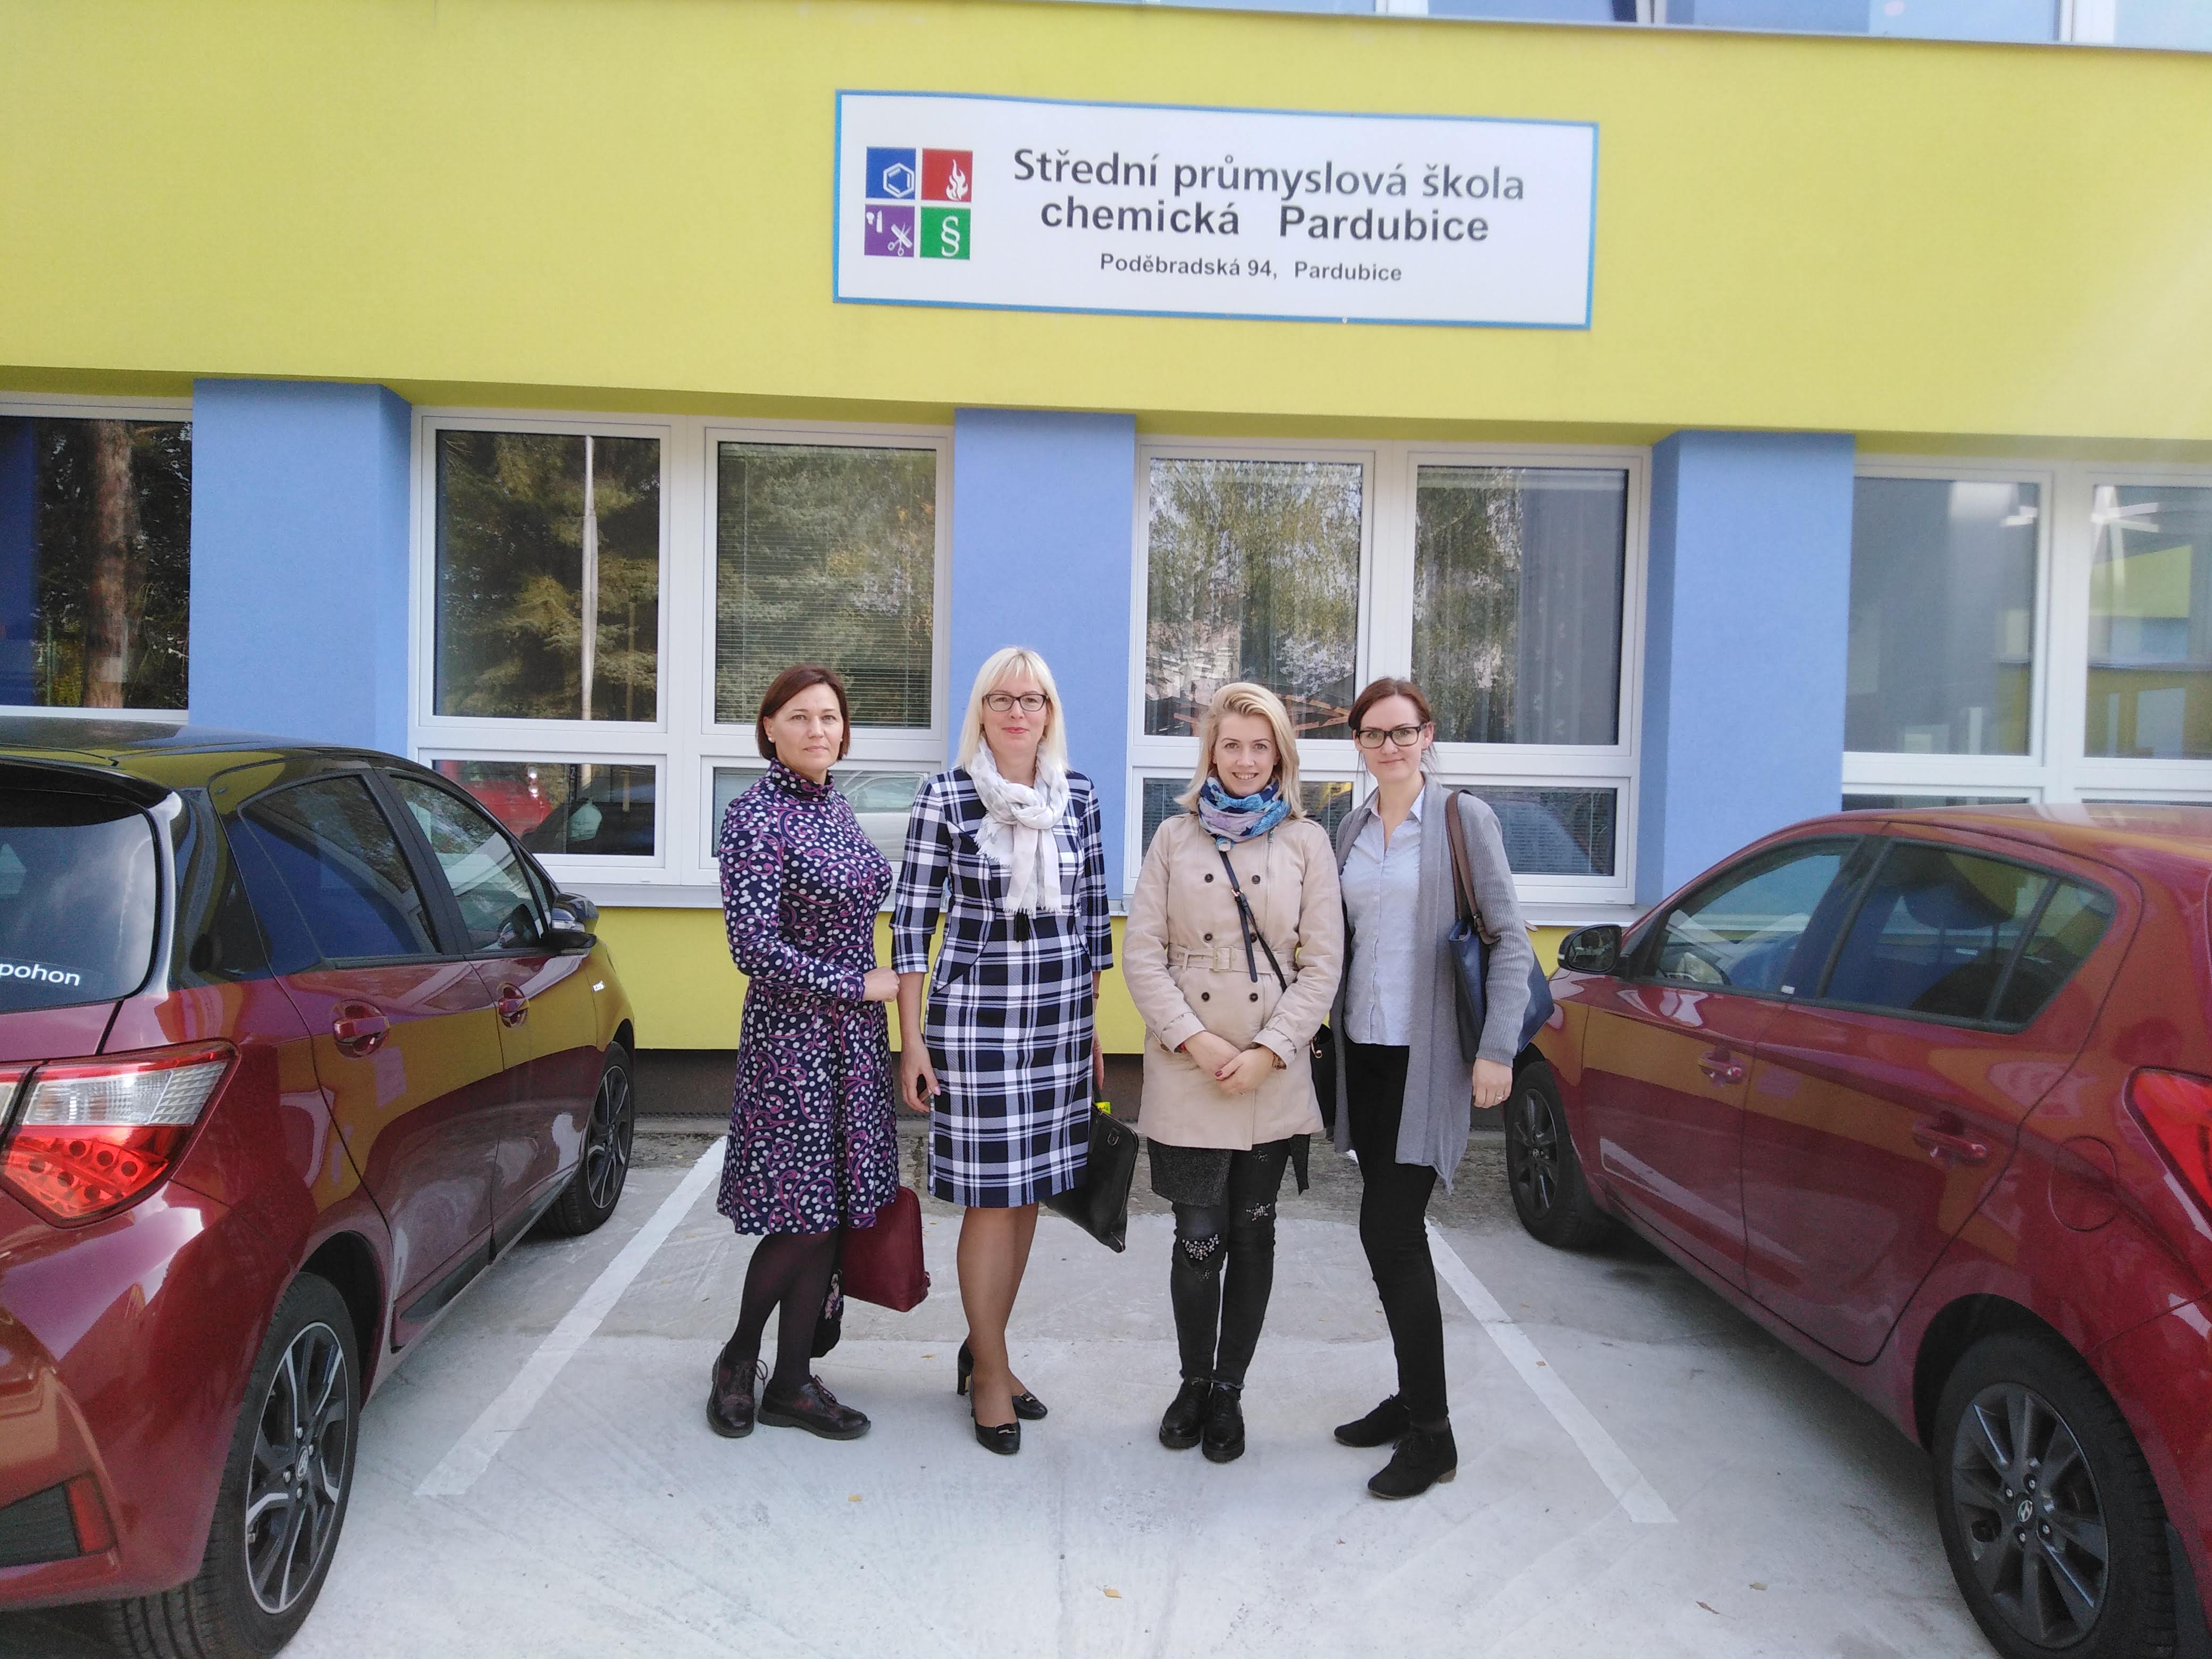 4 partners outside middle school in Pardubice